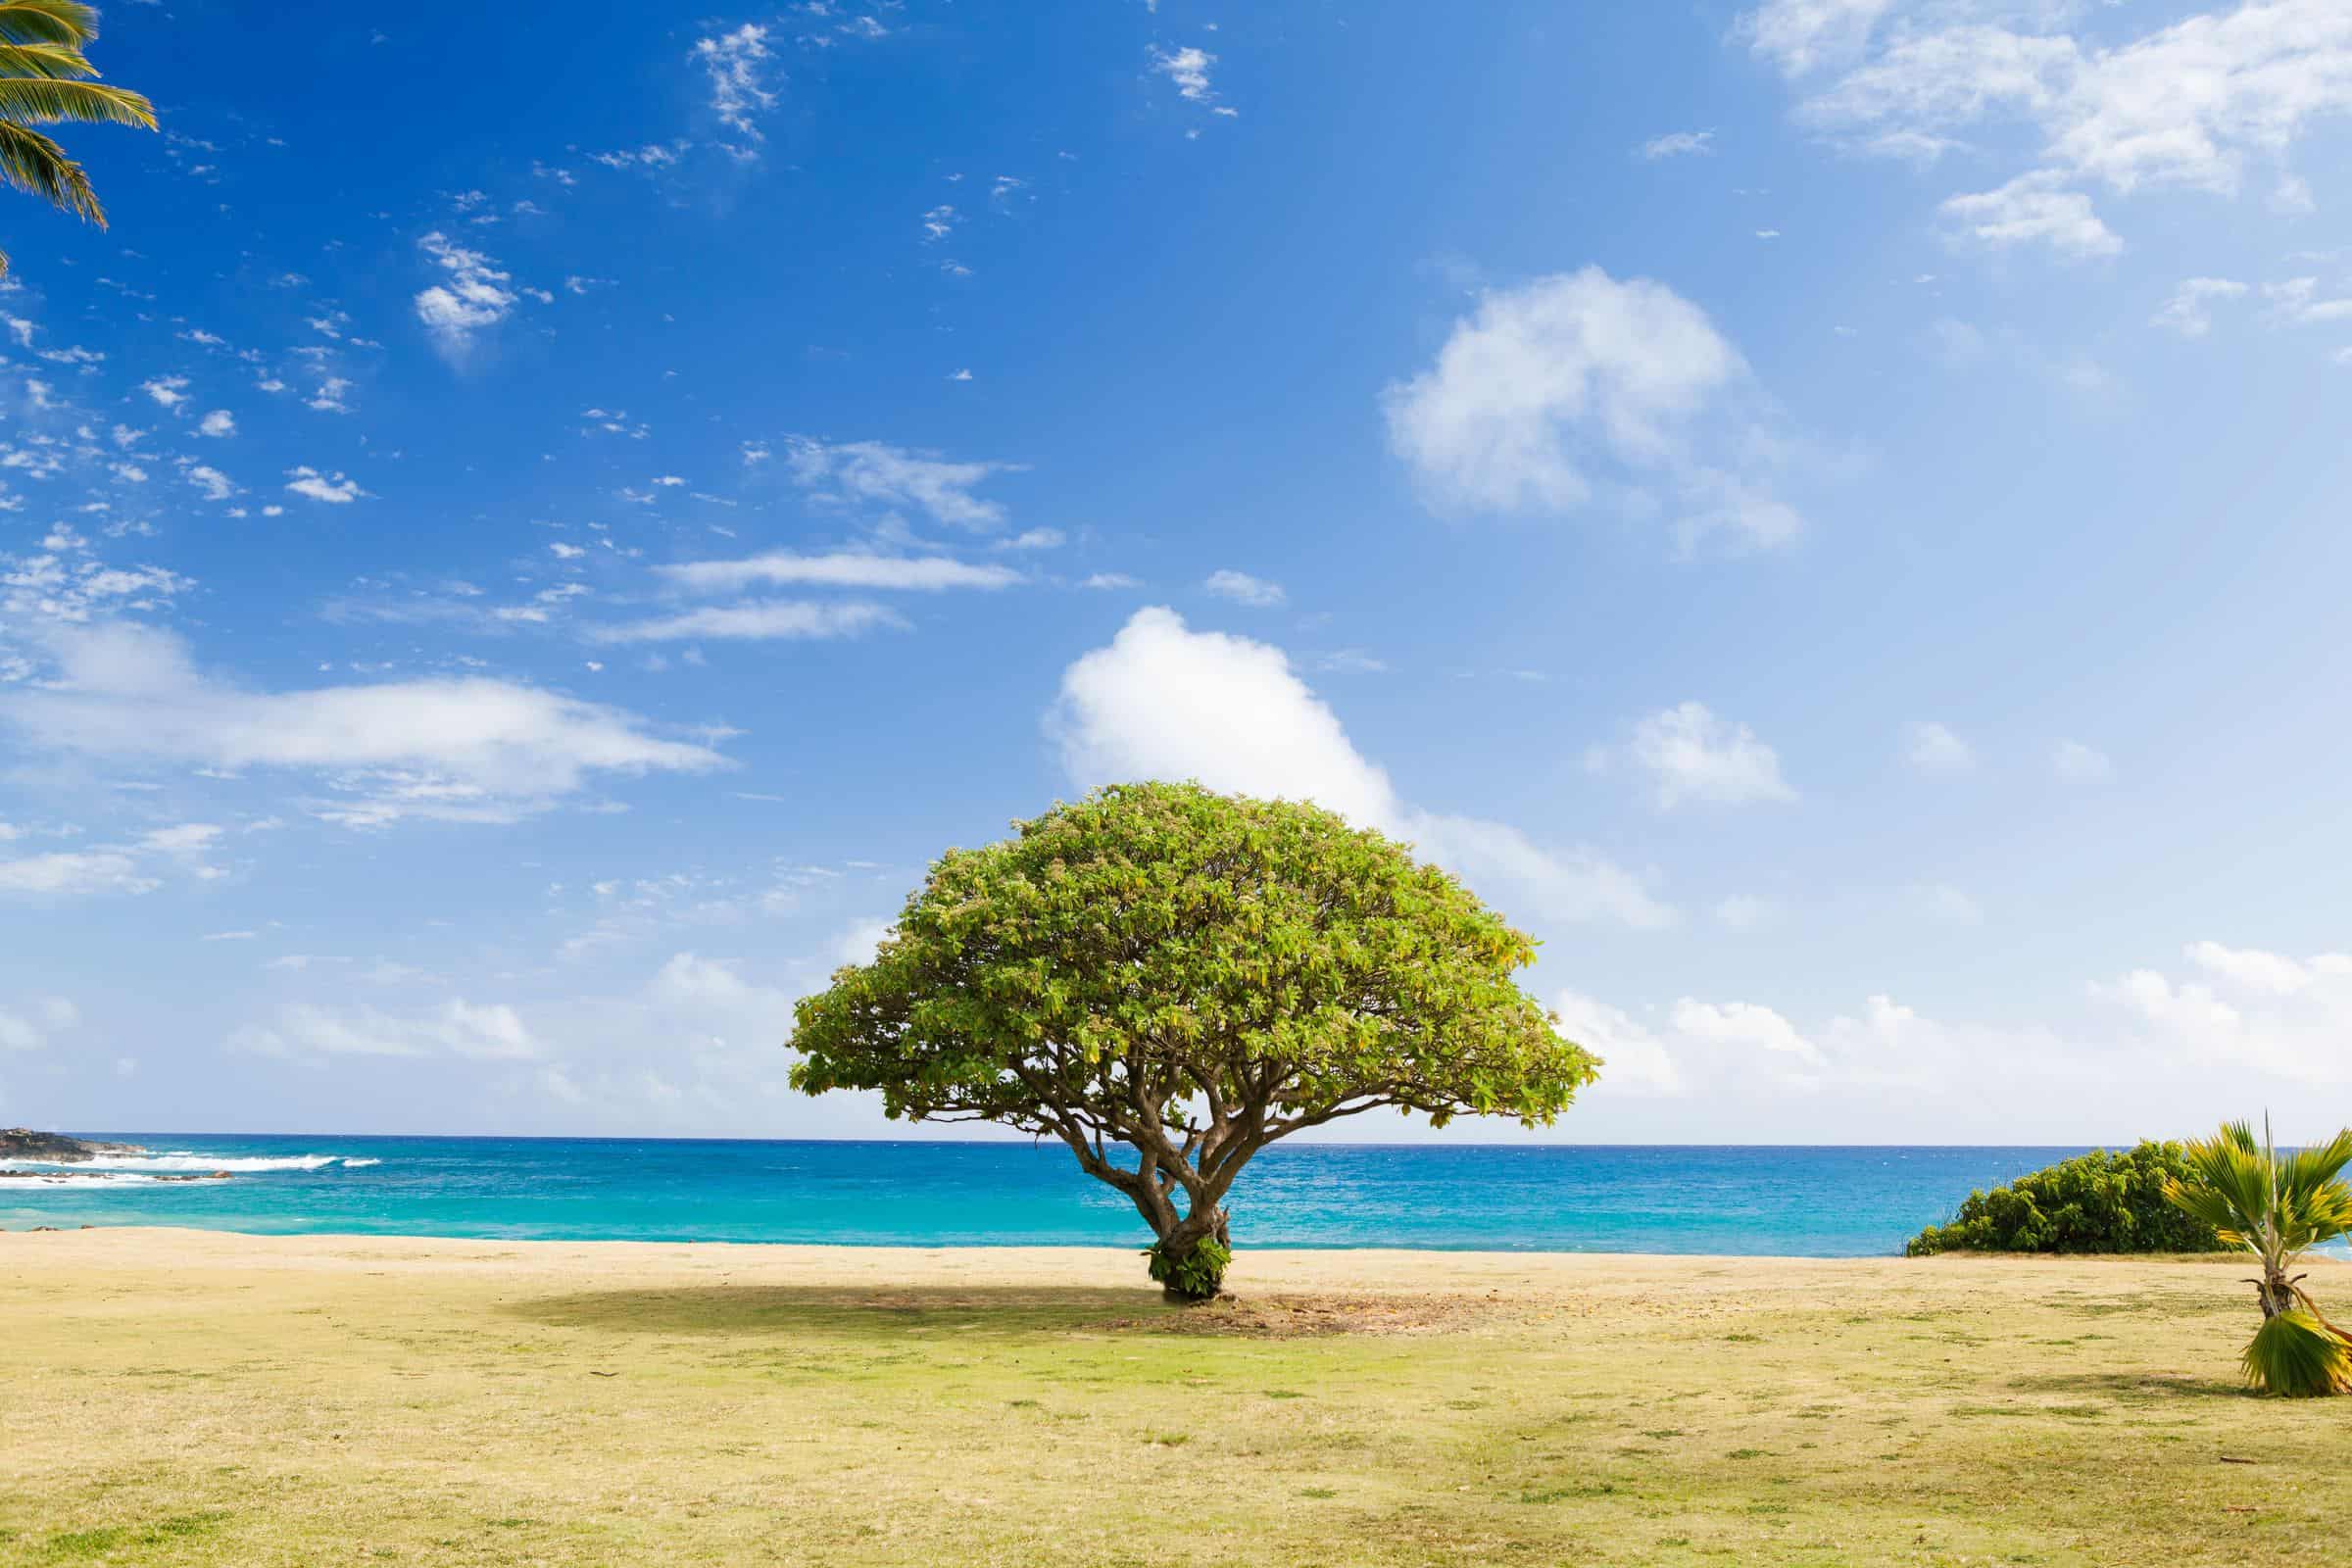 A tree on an island.